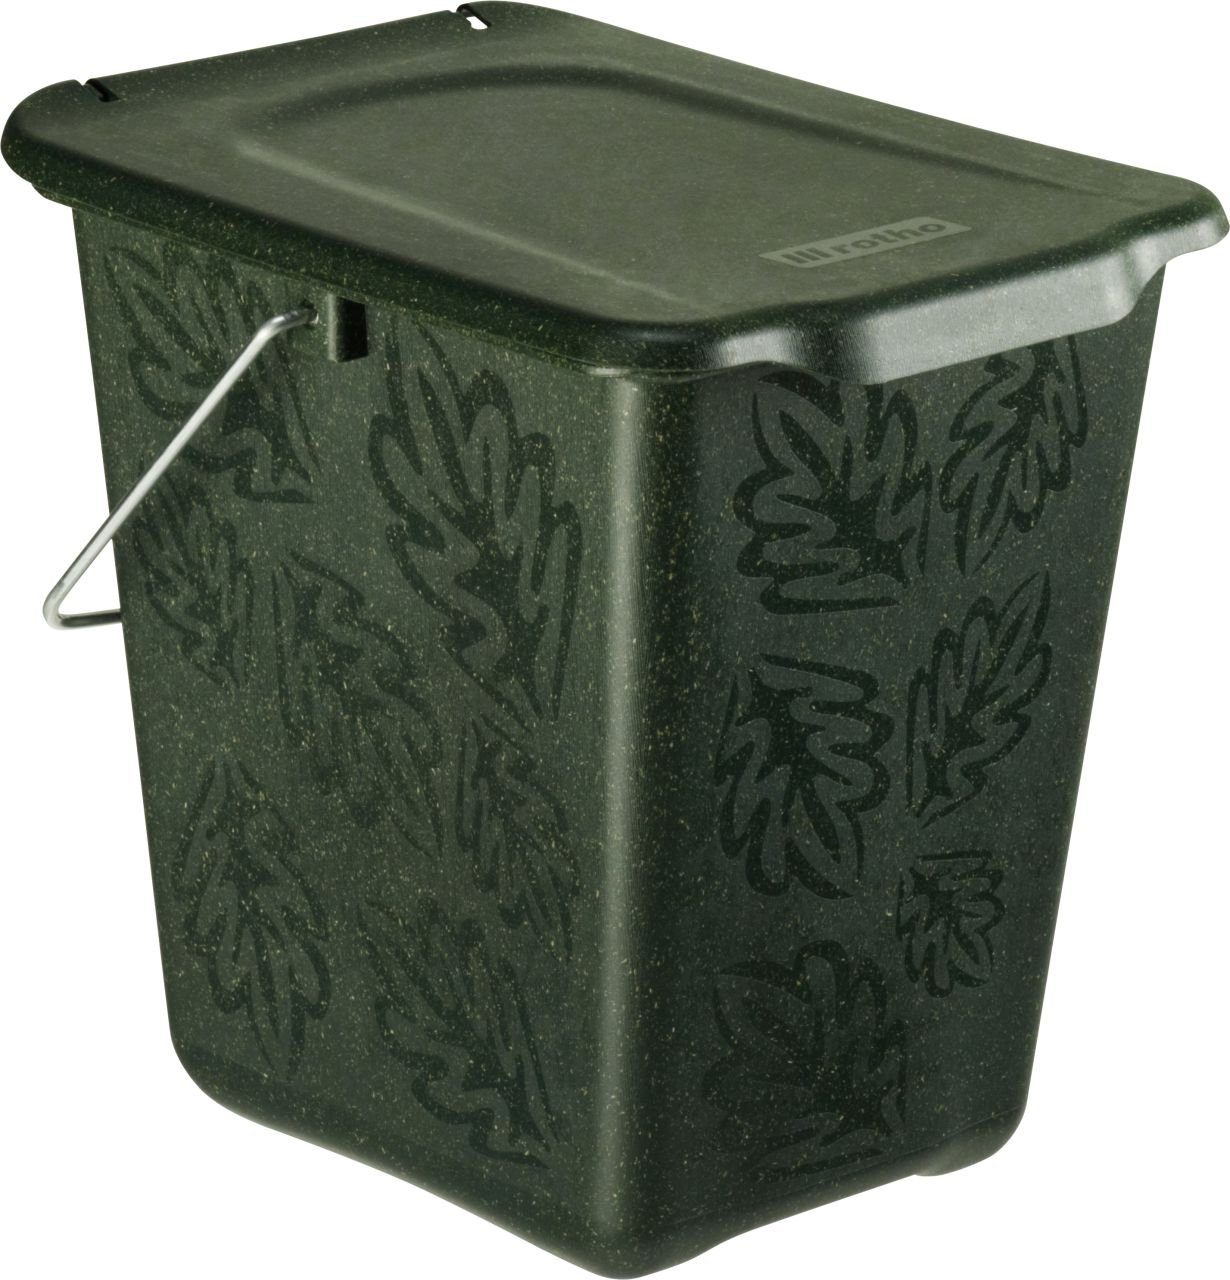 ROTHO Komposter Komposteimer Greenline 7 L, 26 x 20,8 x 25 cm